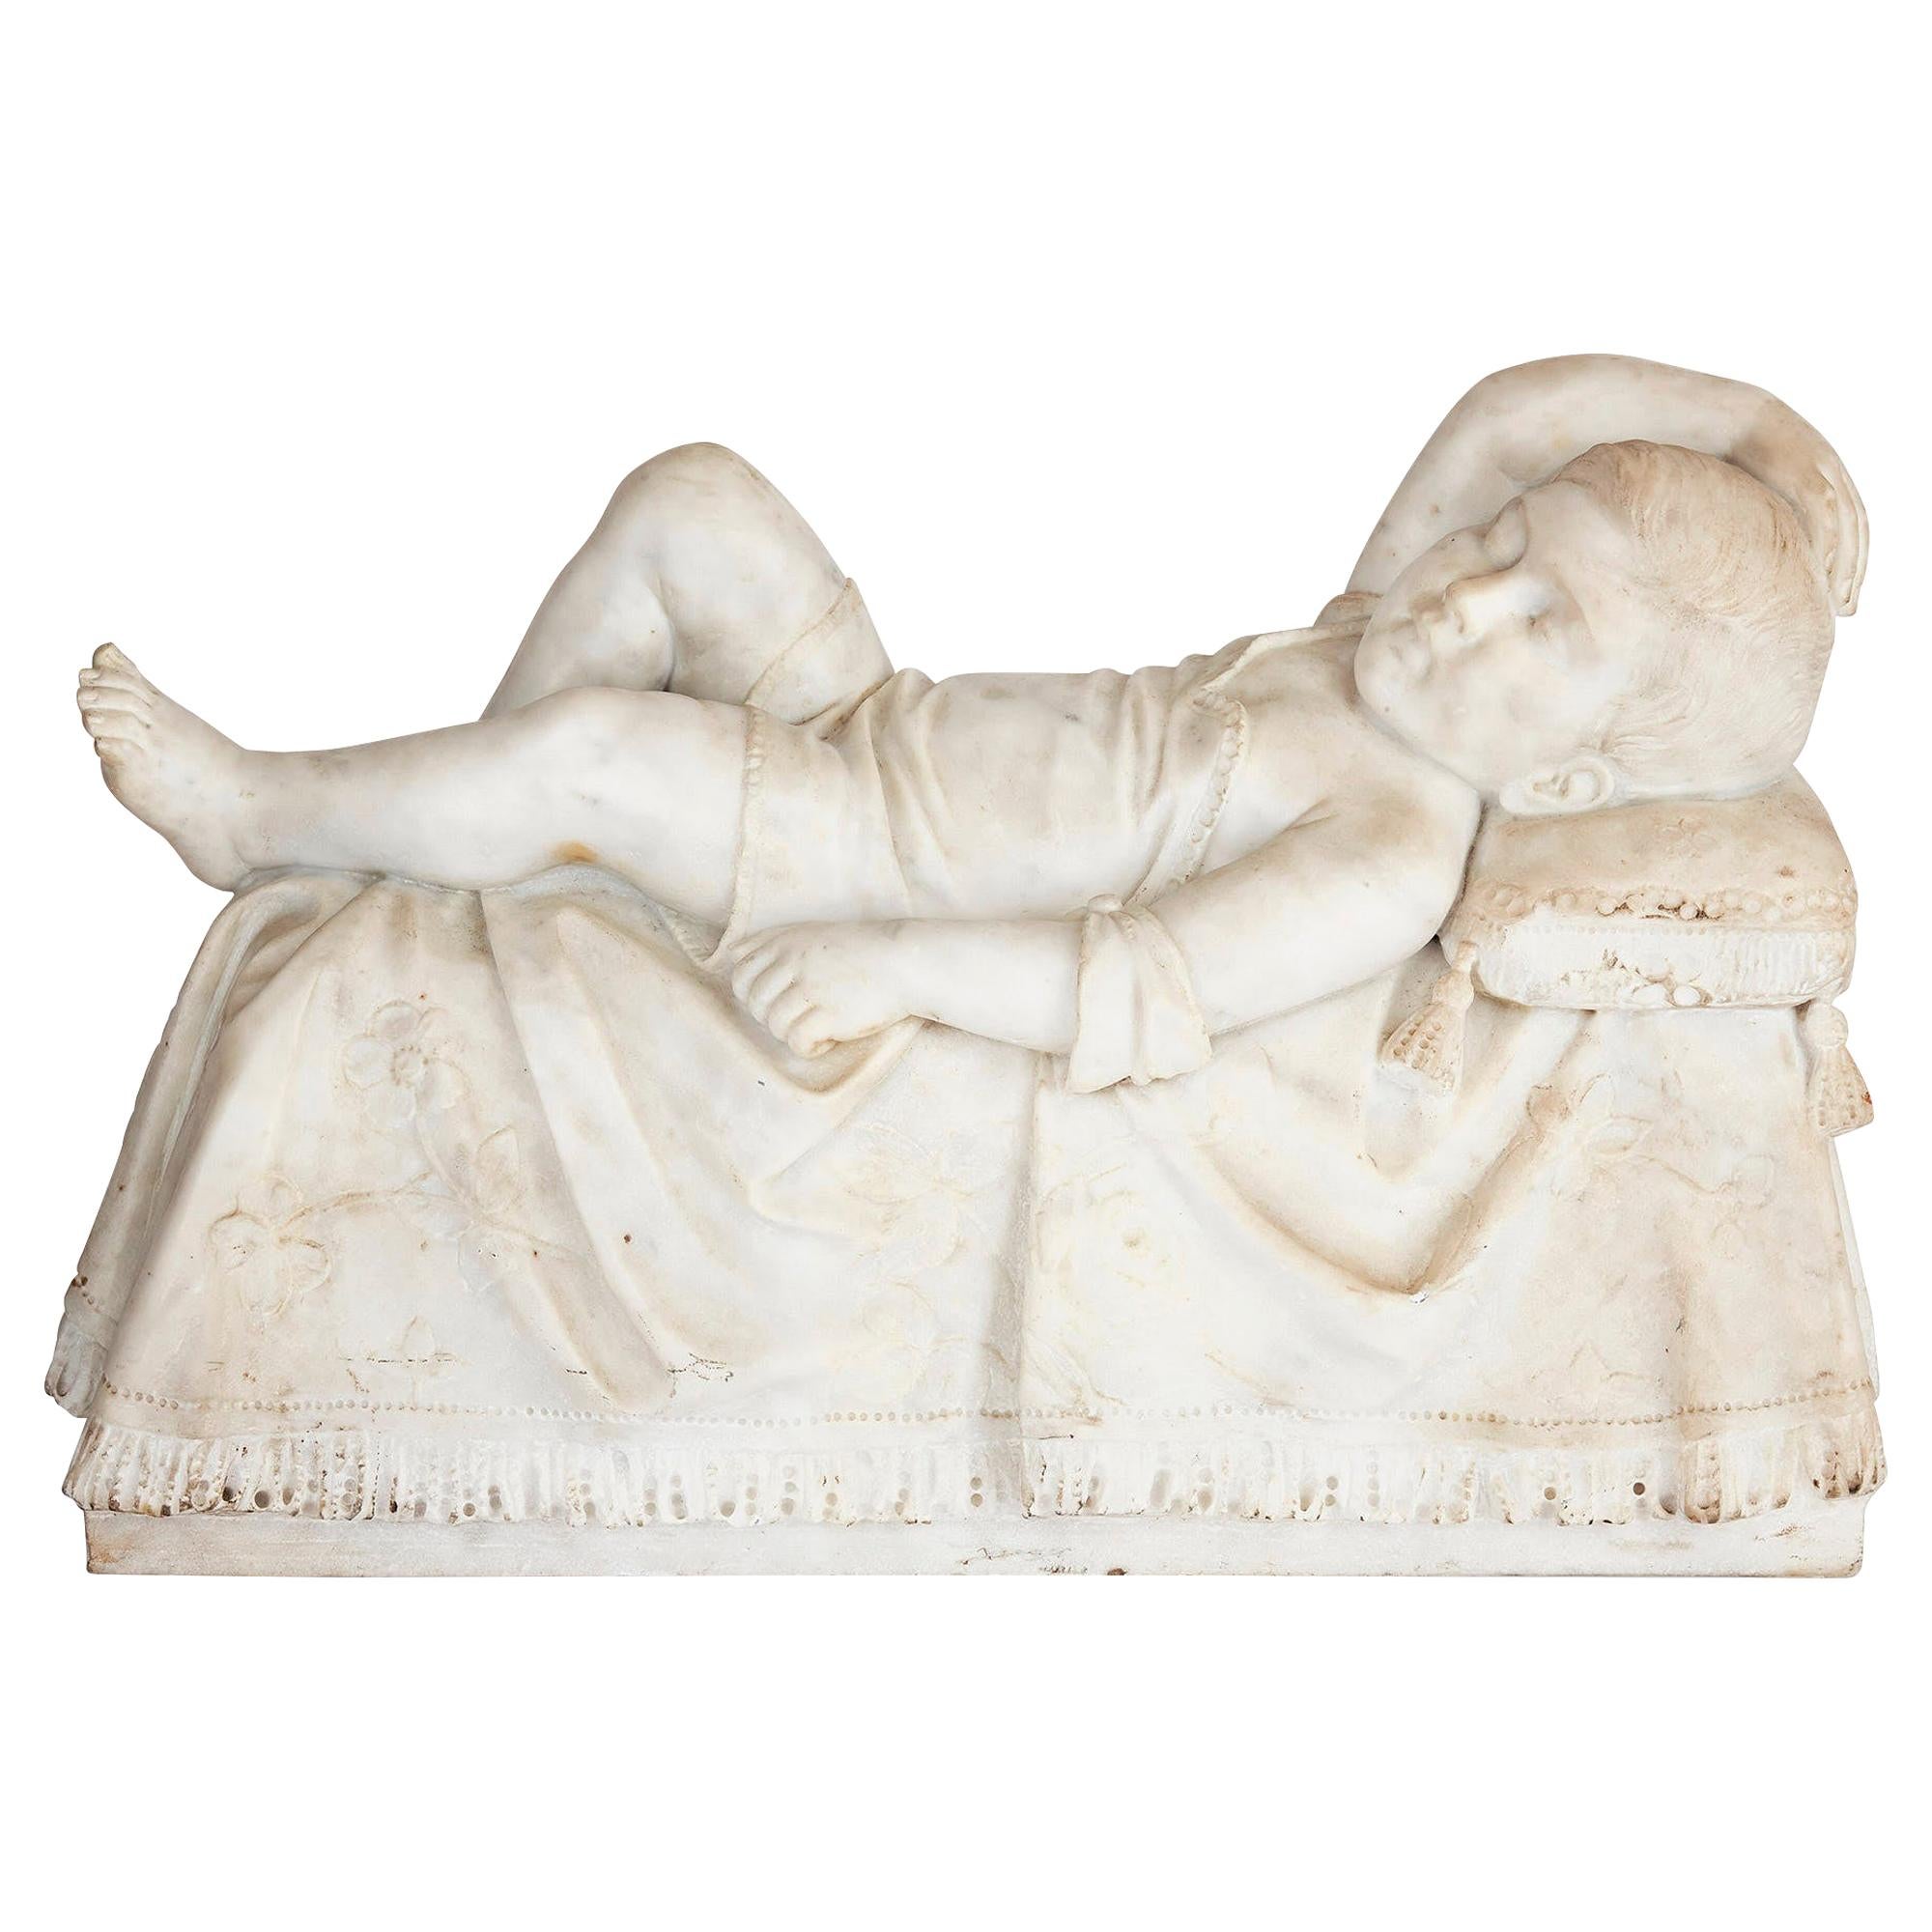 Antike italienische Skulptur eines schlafenden Kindes aus dem 19. Jh.